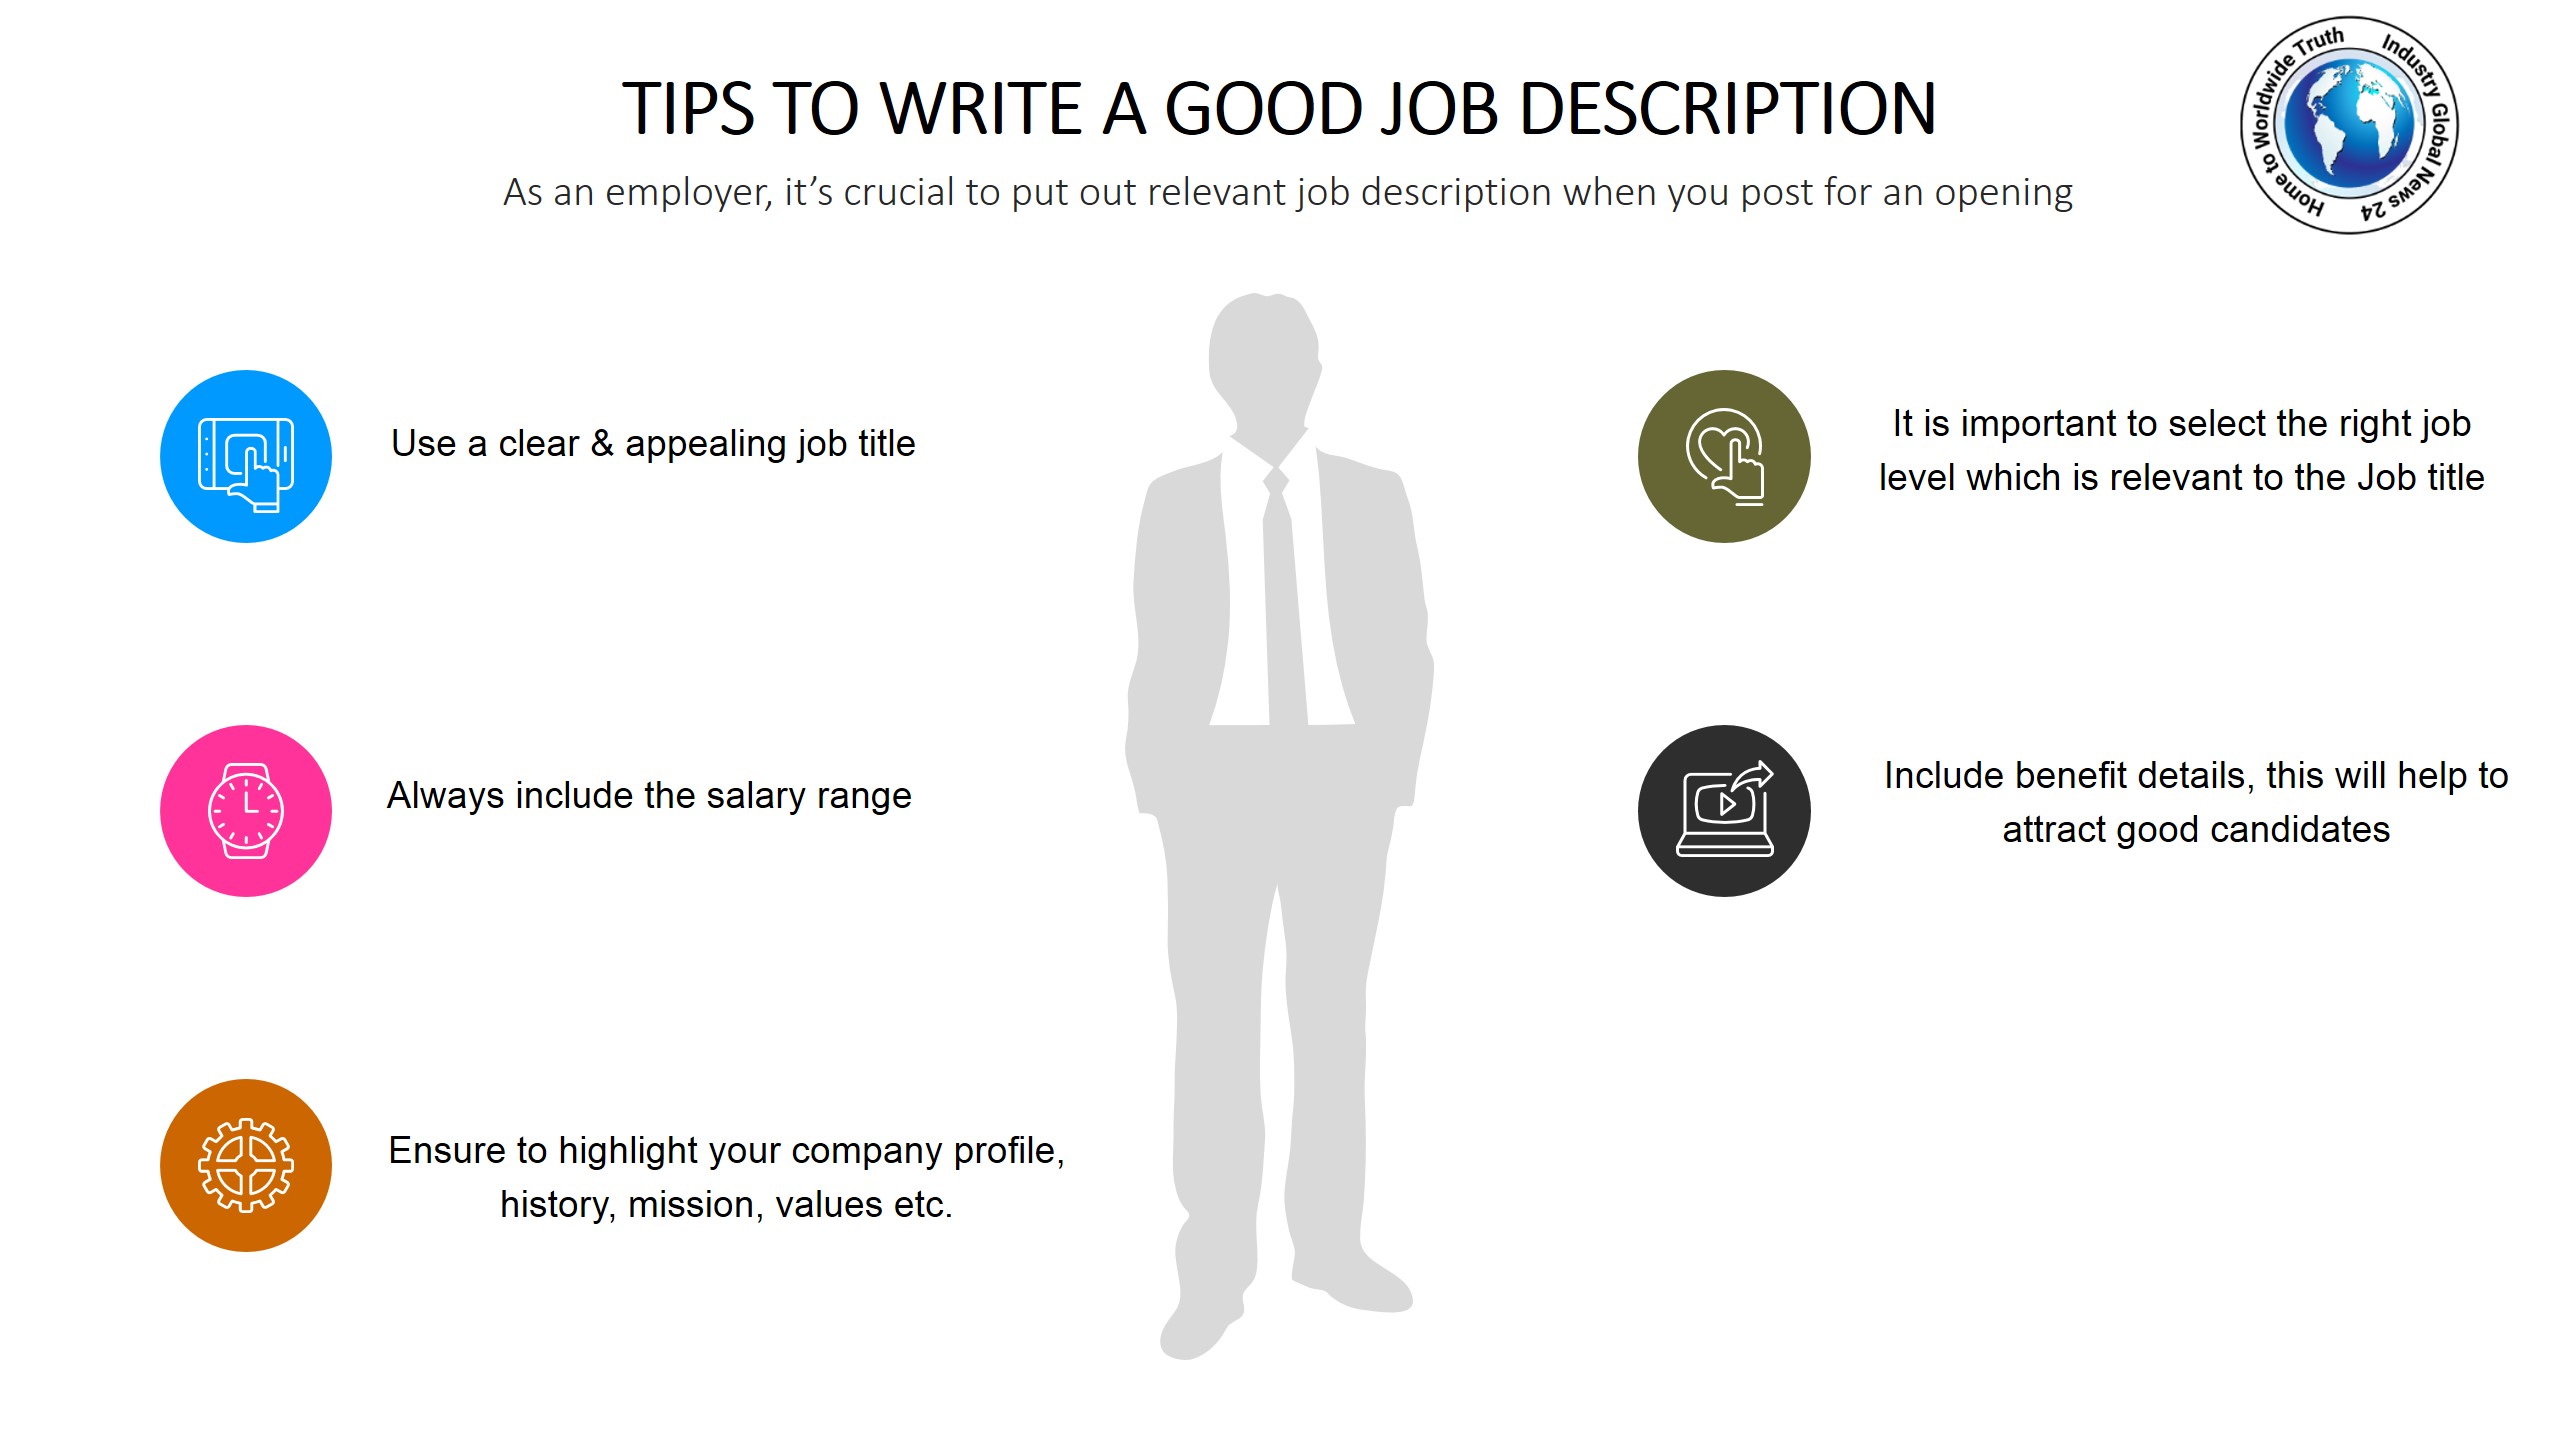 Tips to write a good job description